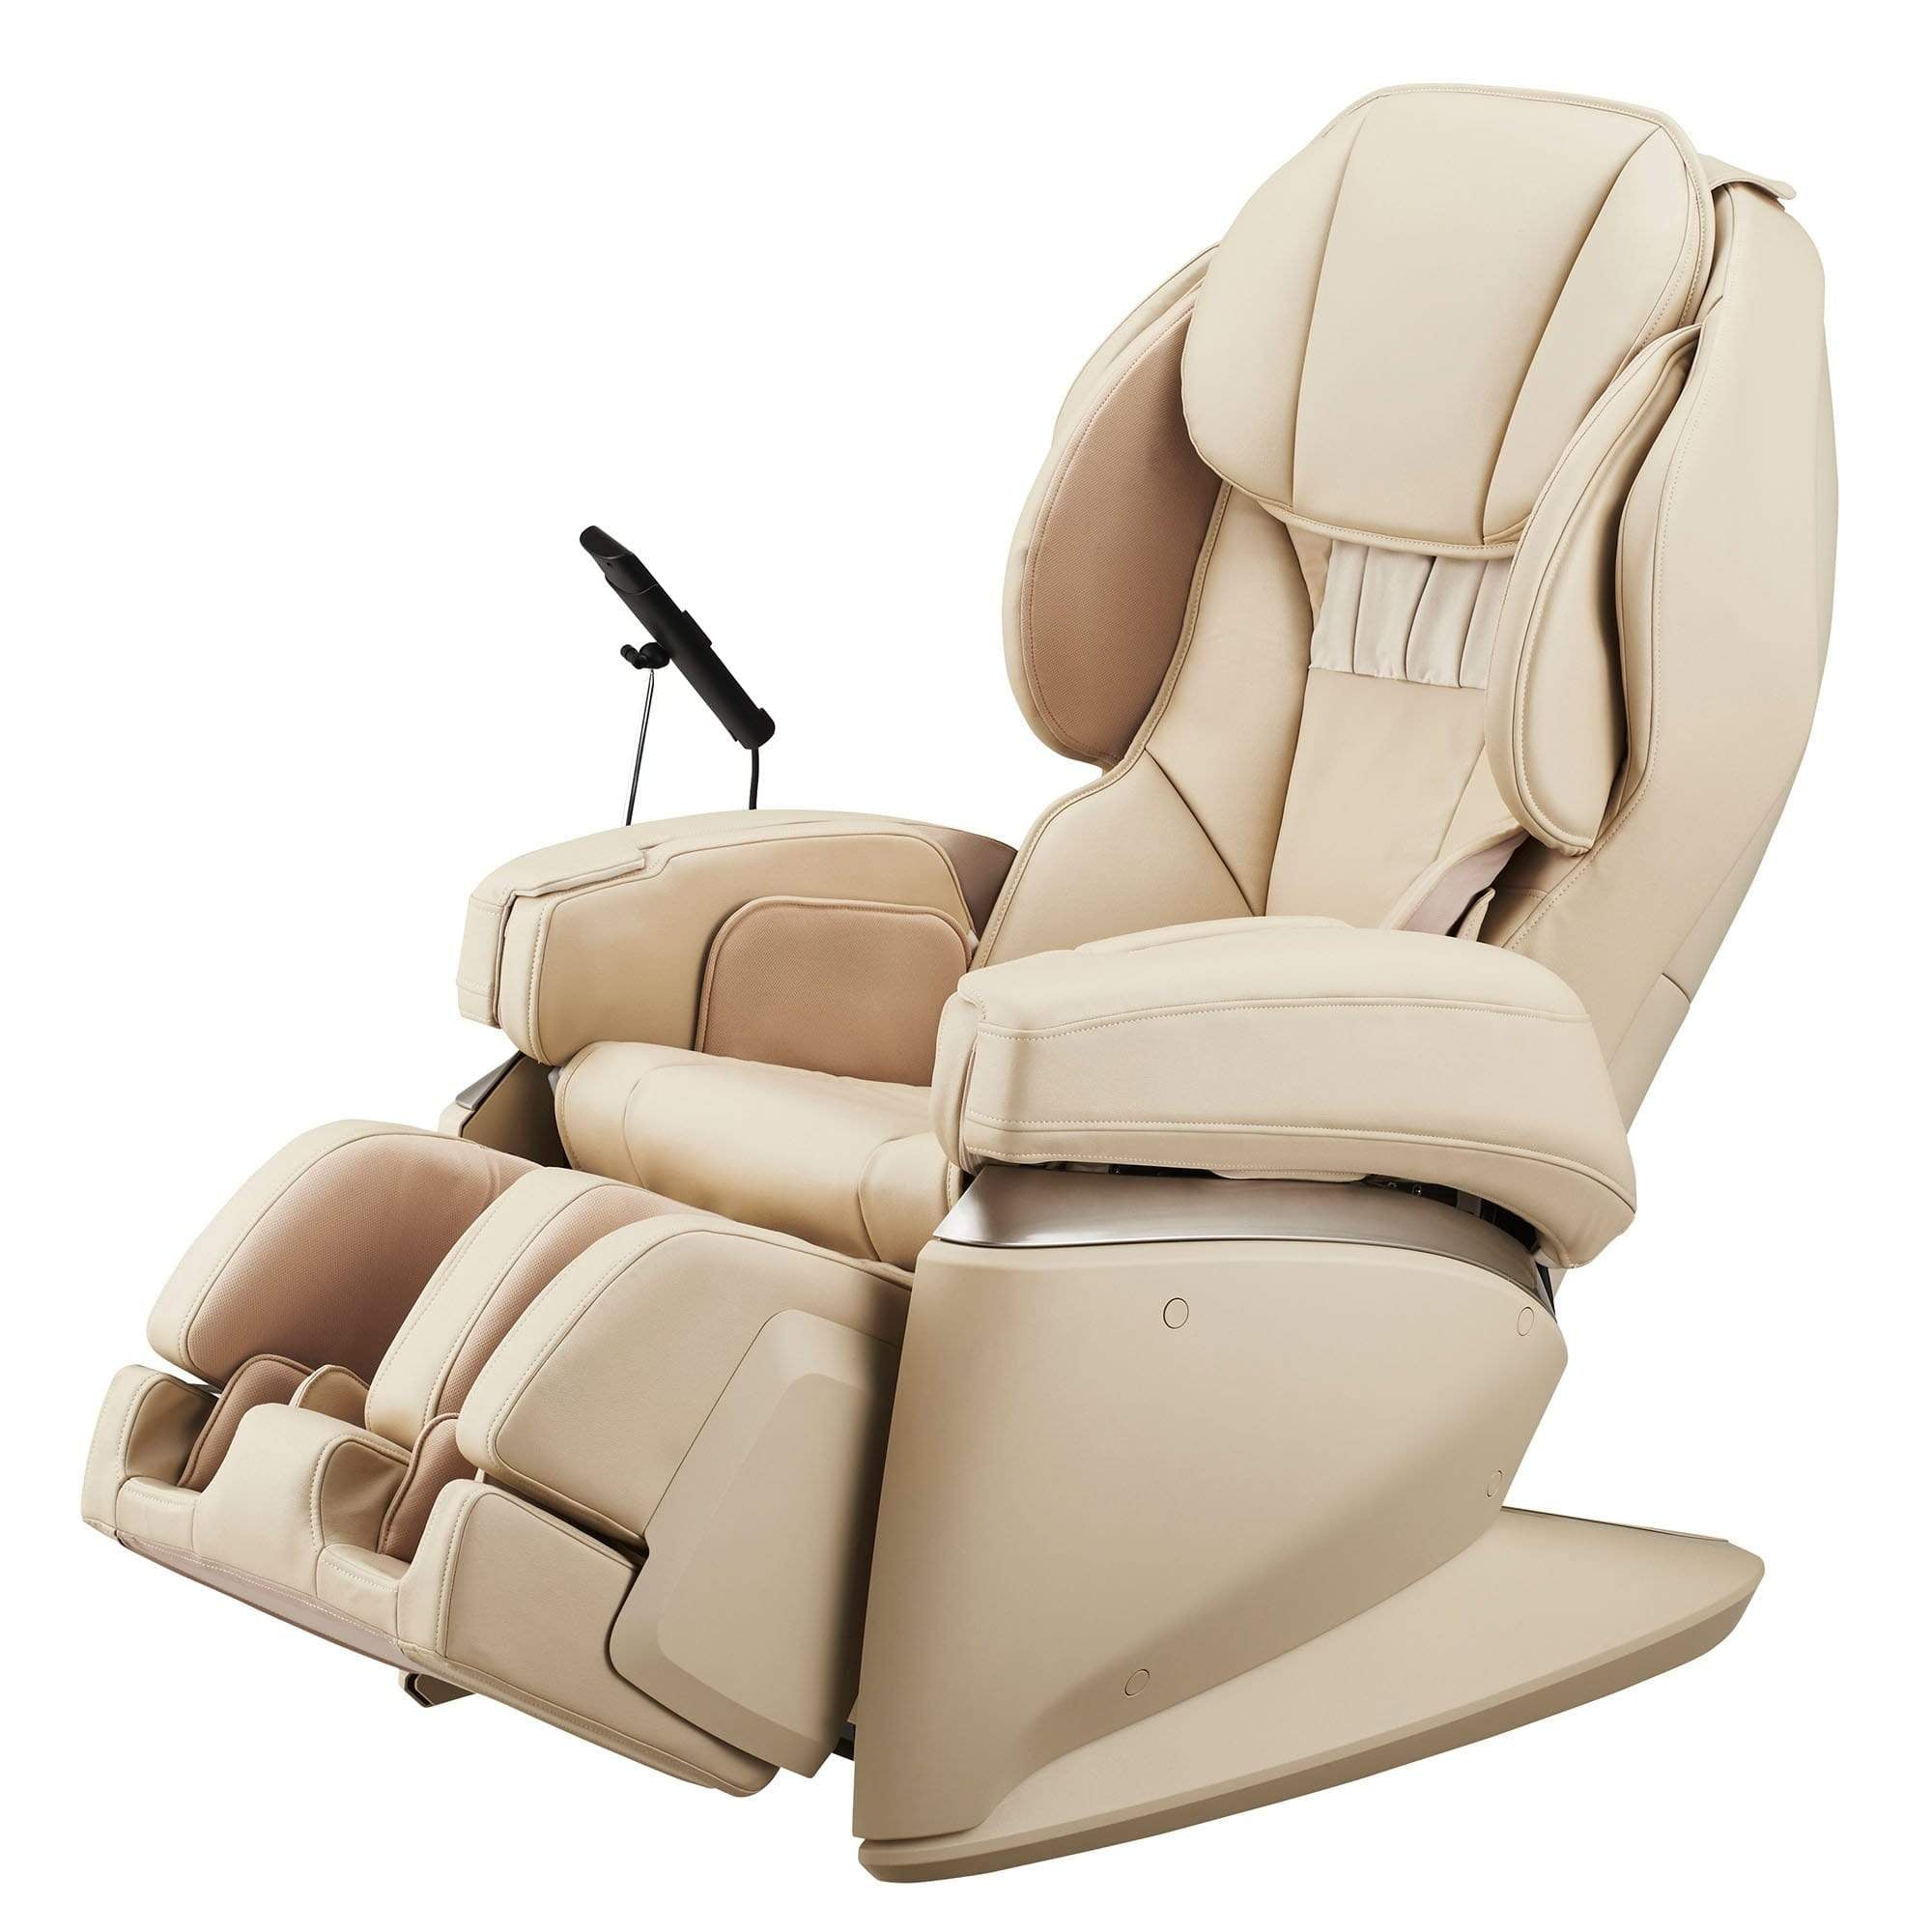 https://acemassagechairs.com/cdn/shop/products/synca-synca-4d-ultra-premium-massage-chair-jp1100-beige-massage-chair-smr0005-11na-23652334960827.jpg?v=1615009138&width=2000